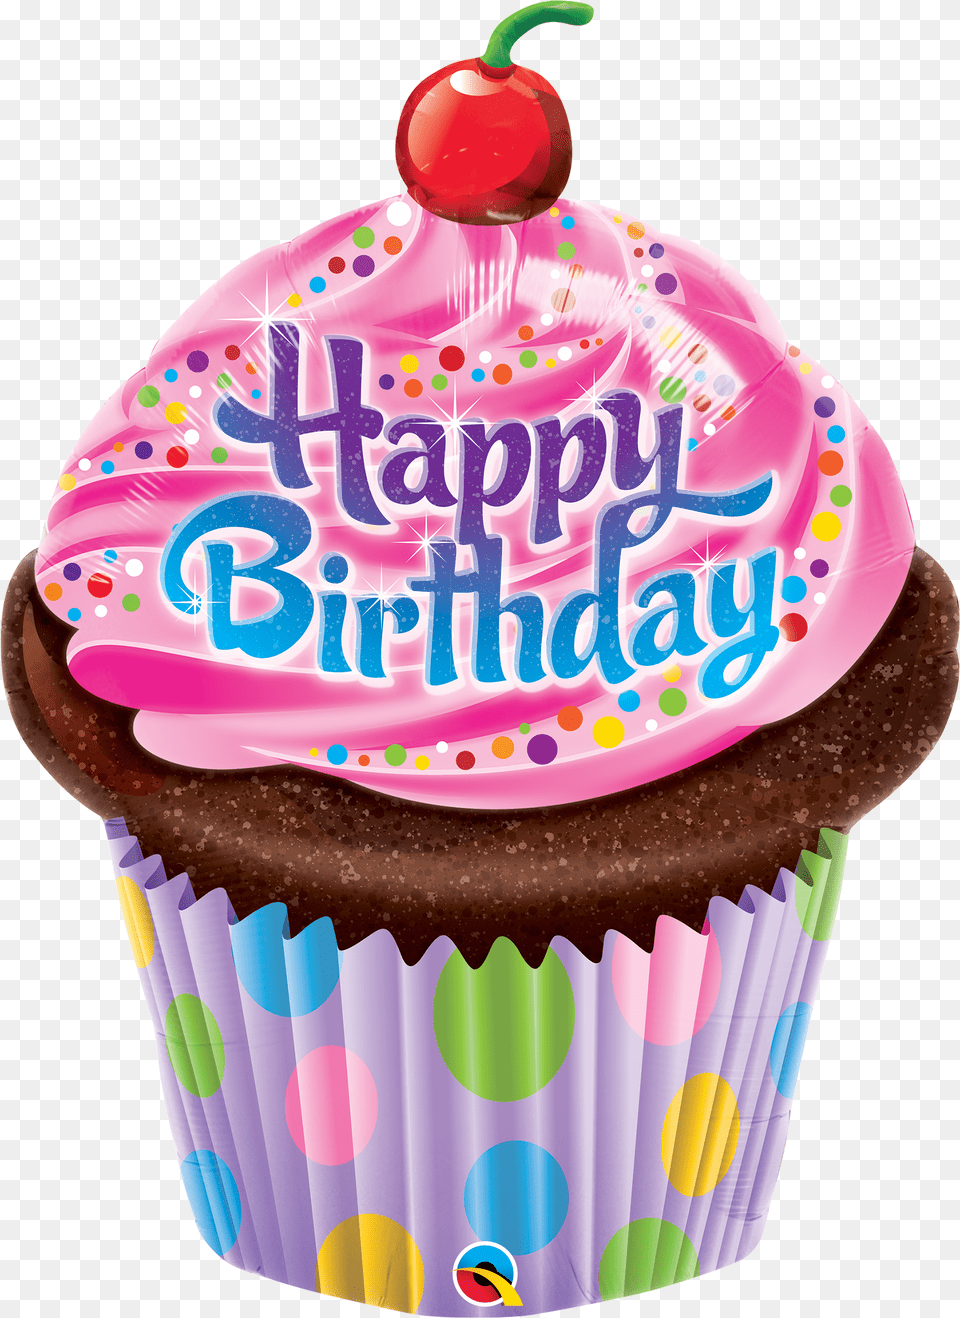 Clip Art Happy Birthday Cupcake Image Happy Birthday De Cupcake Png